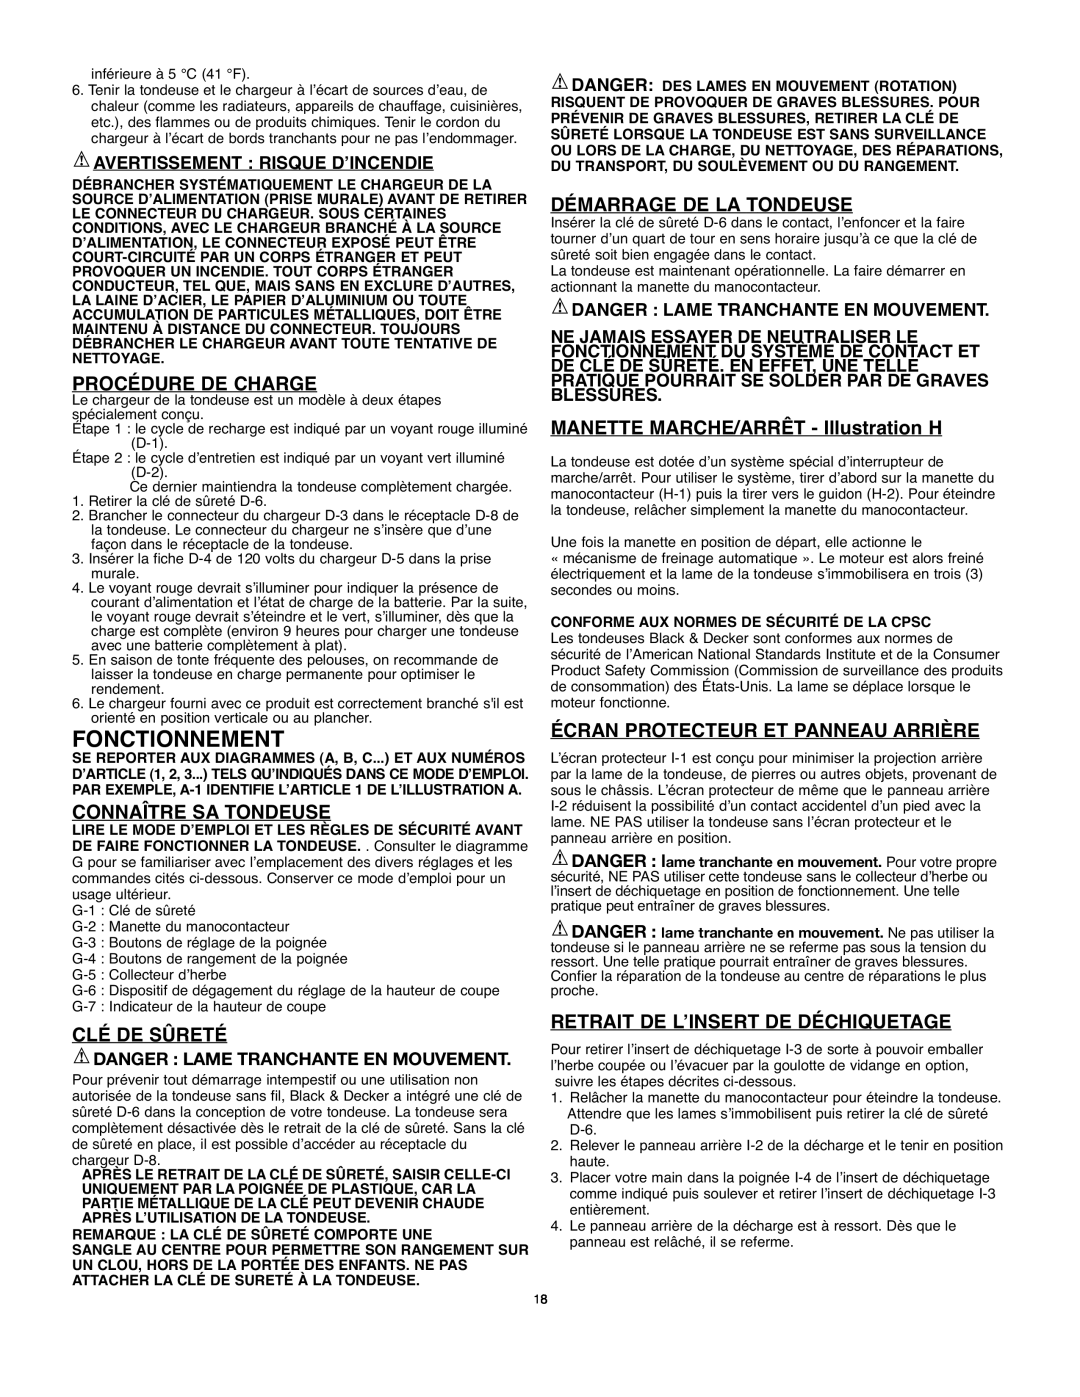 Black & Decker 90514757 instruction manual Fonctionnement, Procédure De Charge, Connaître Sa Tondeuse, Clé De Sûreté 